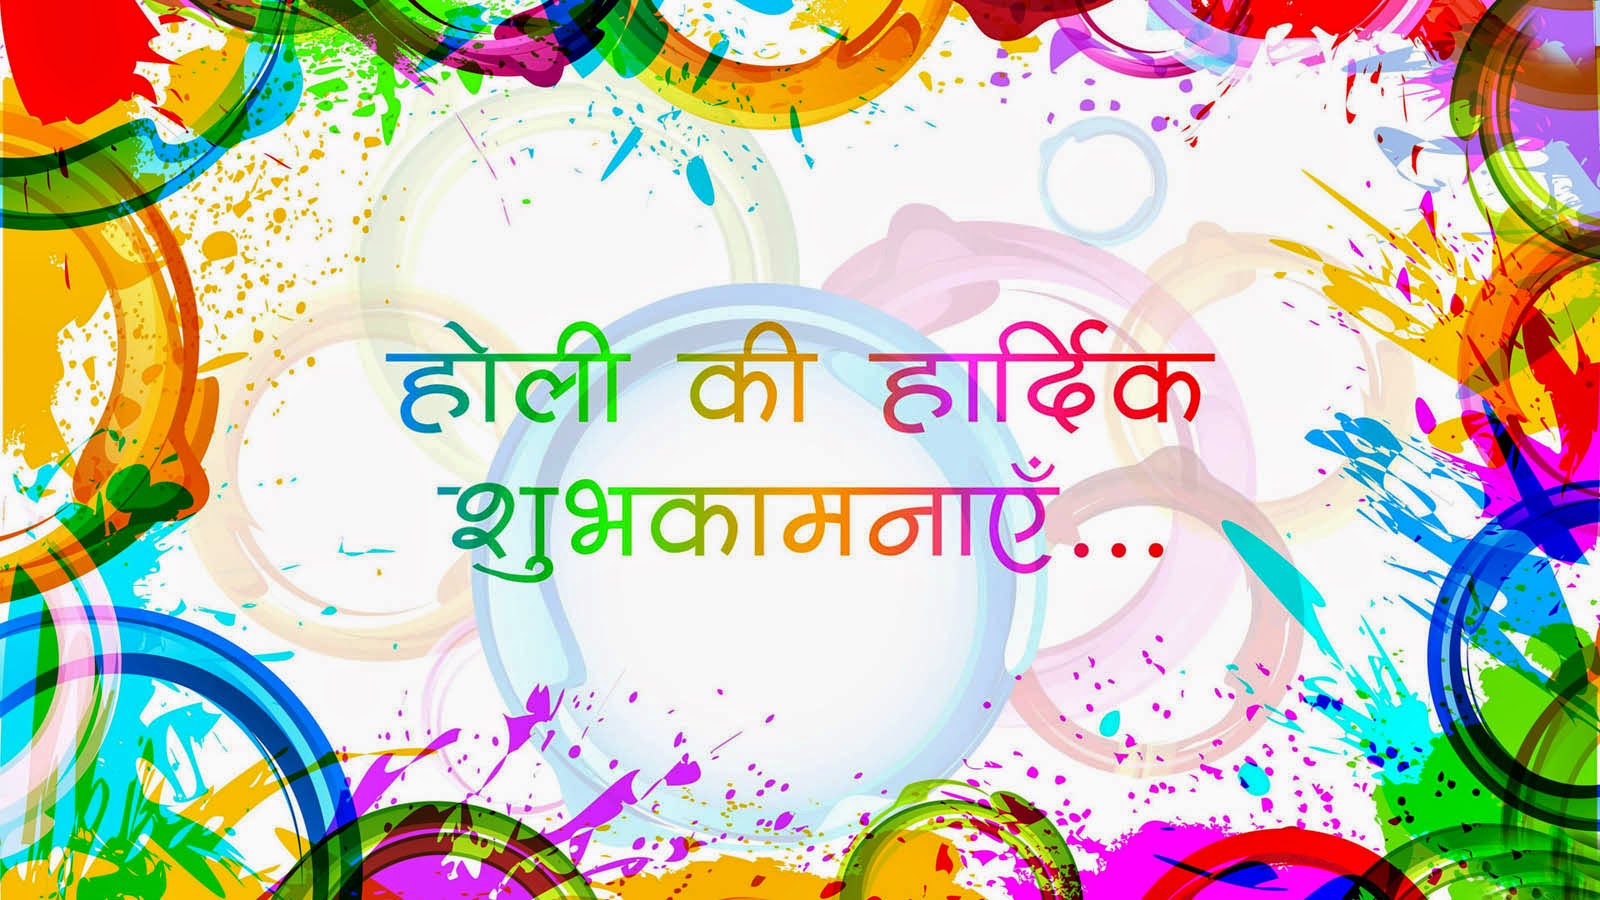 Happy Holi 2017 Hindi Greetings Hd Wallpapers Happy Holi 2017 Wishes